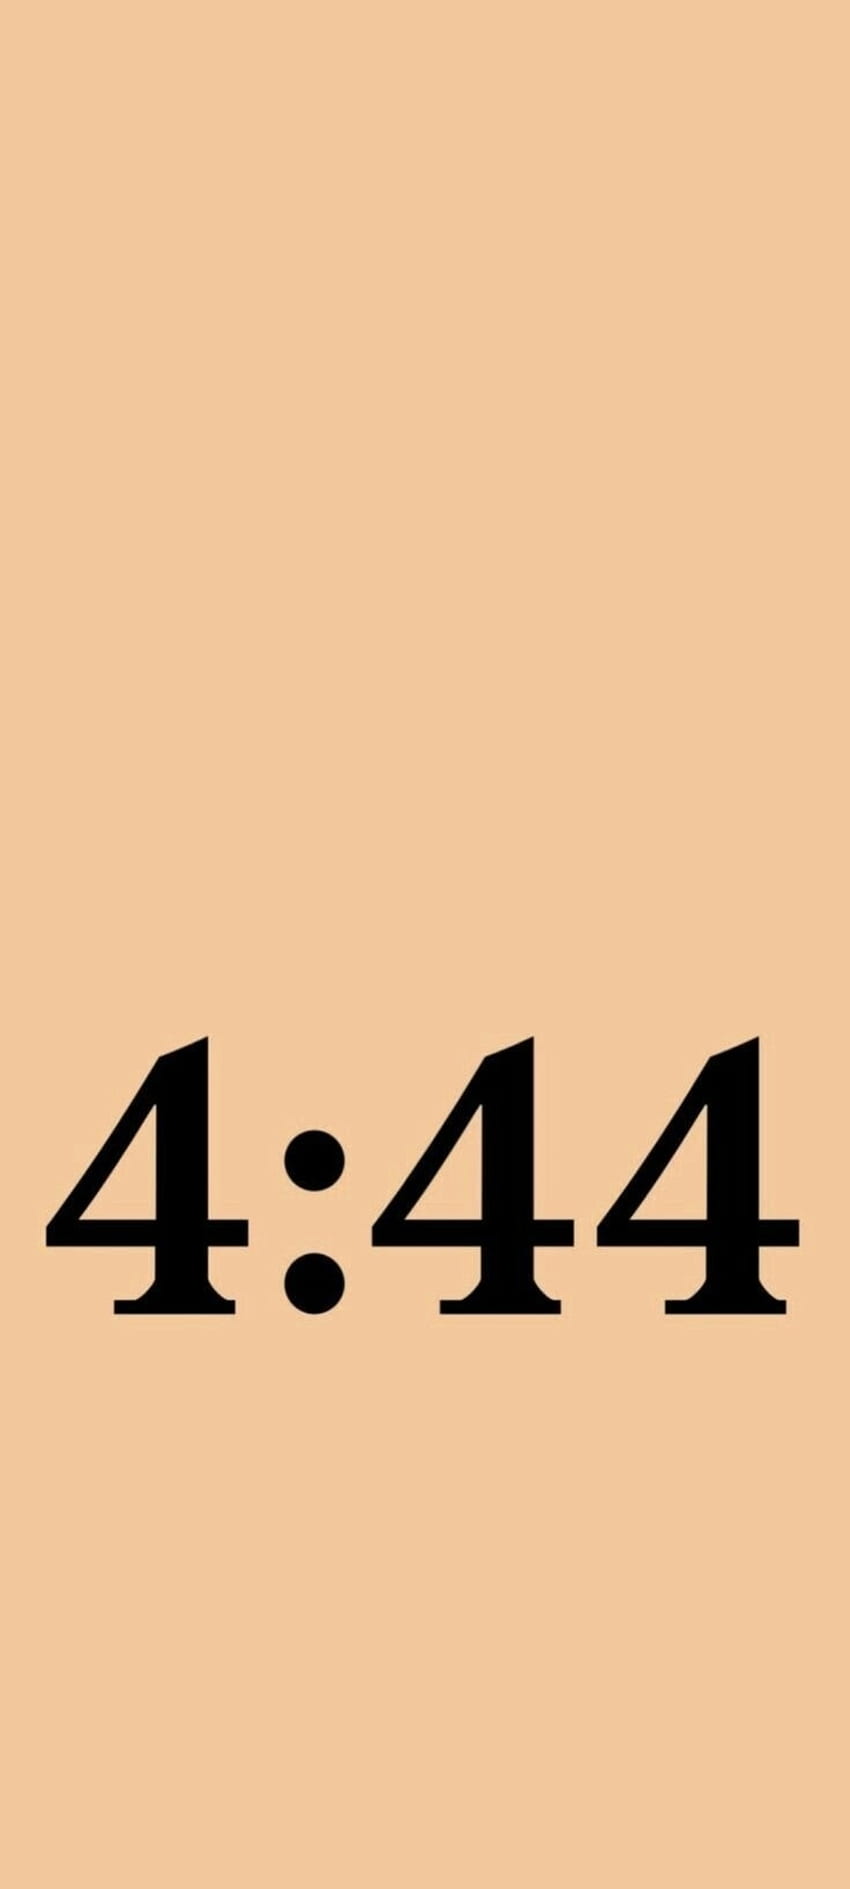 4:44, 444, jay-z HD phone wallpaper